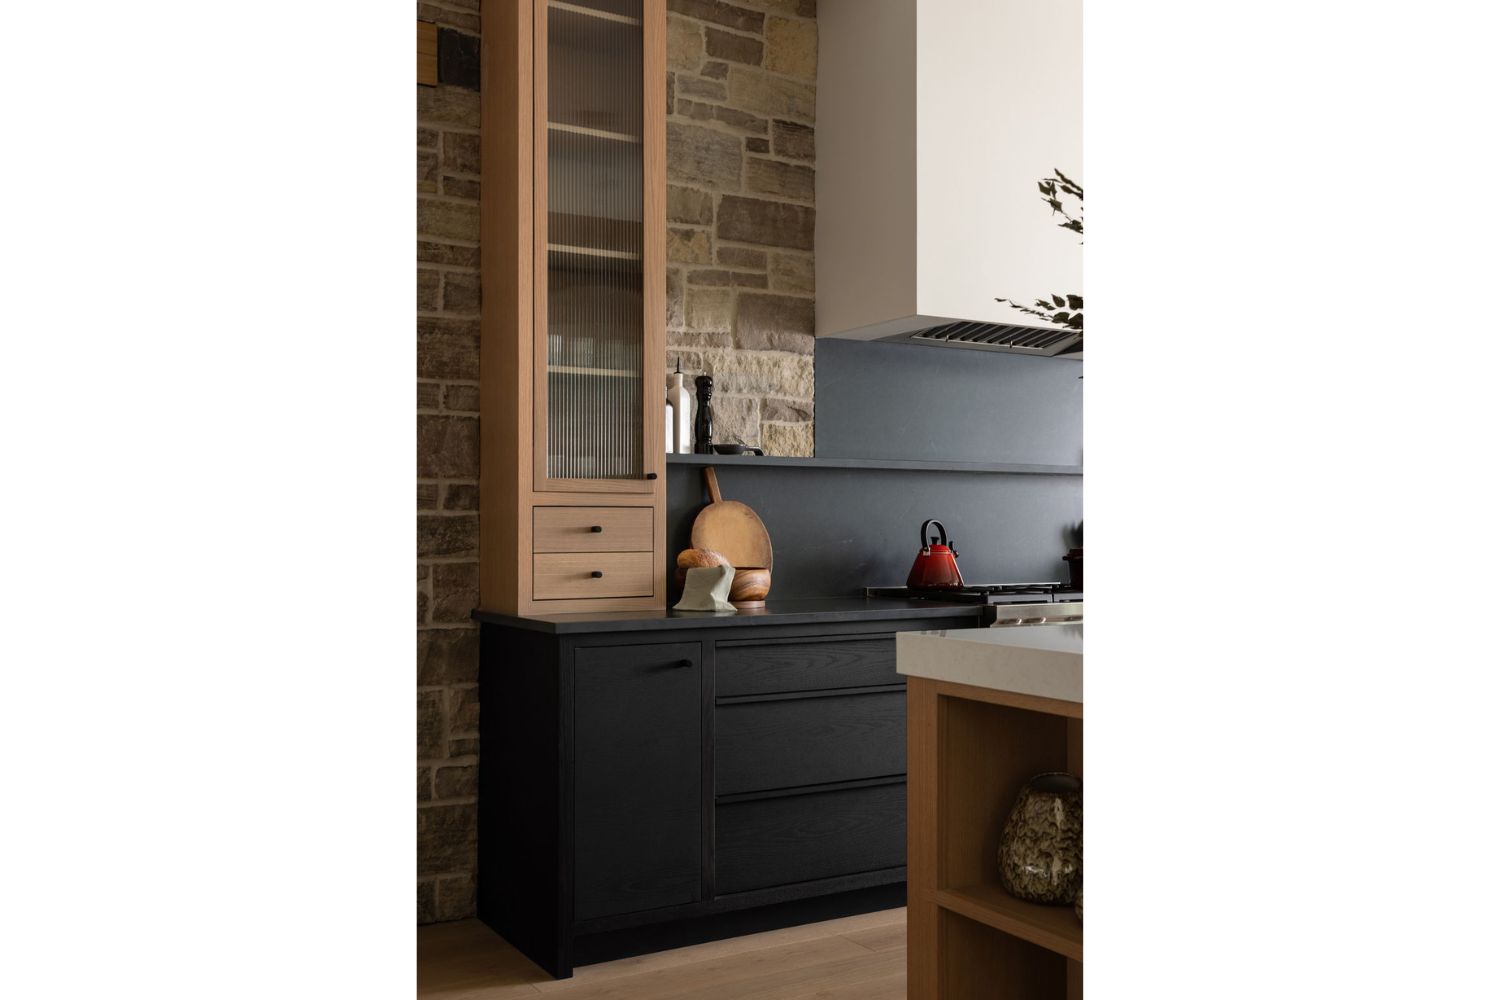 Project Fieldale: White oak custom kitchen cabinets